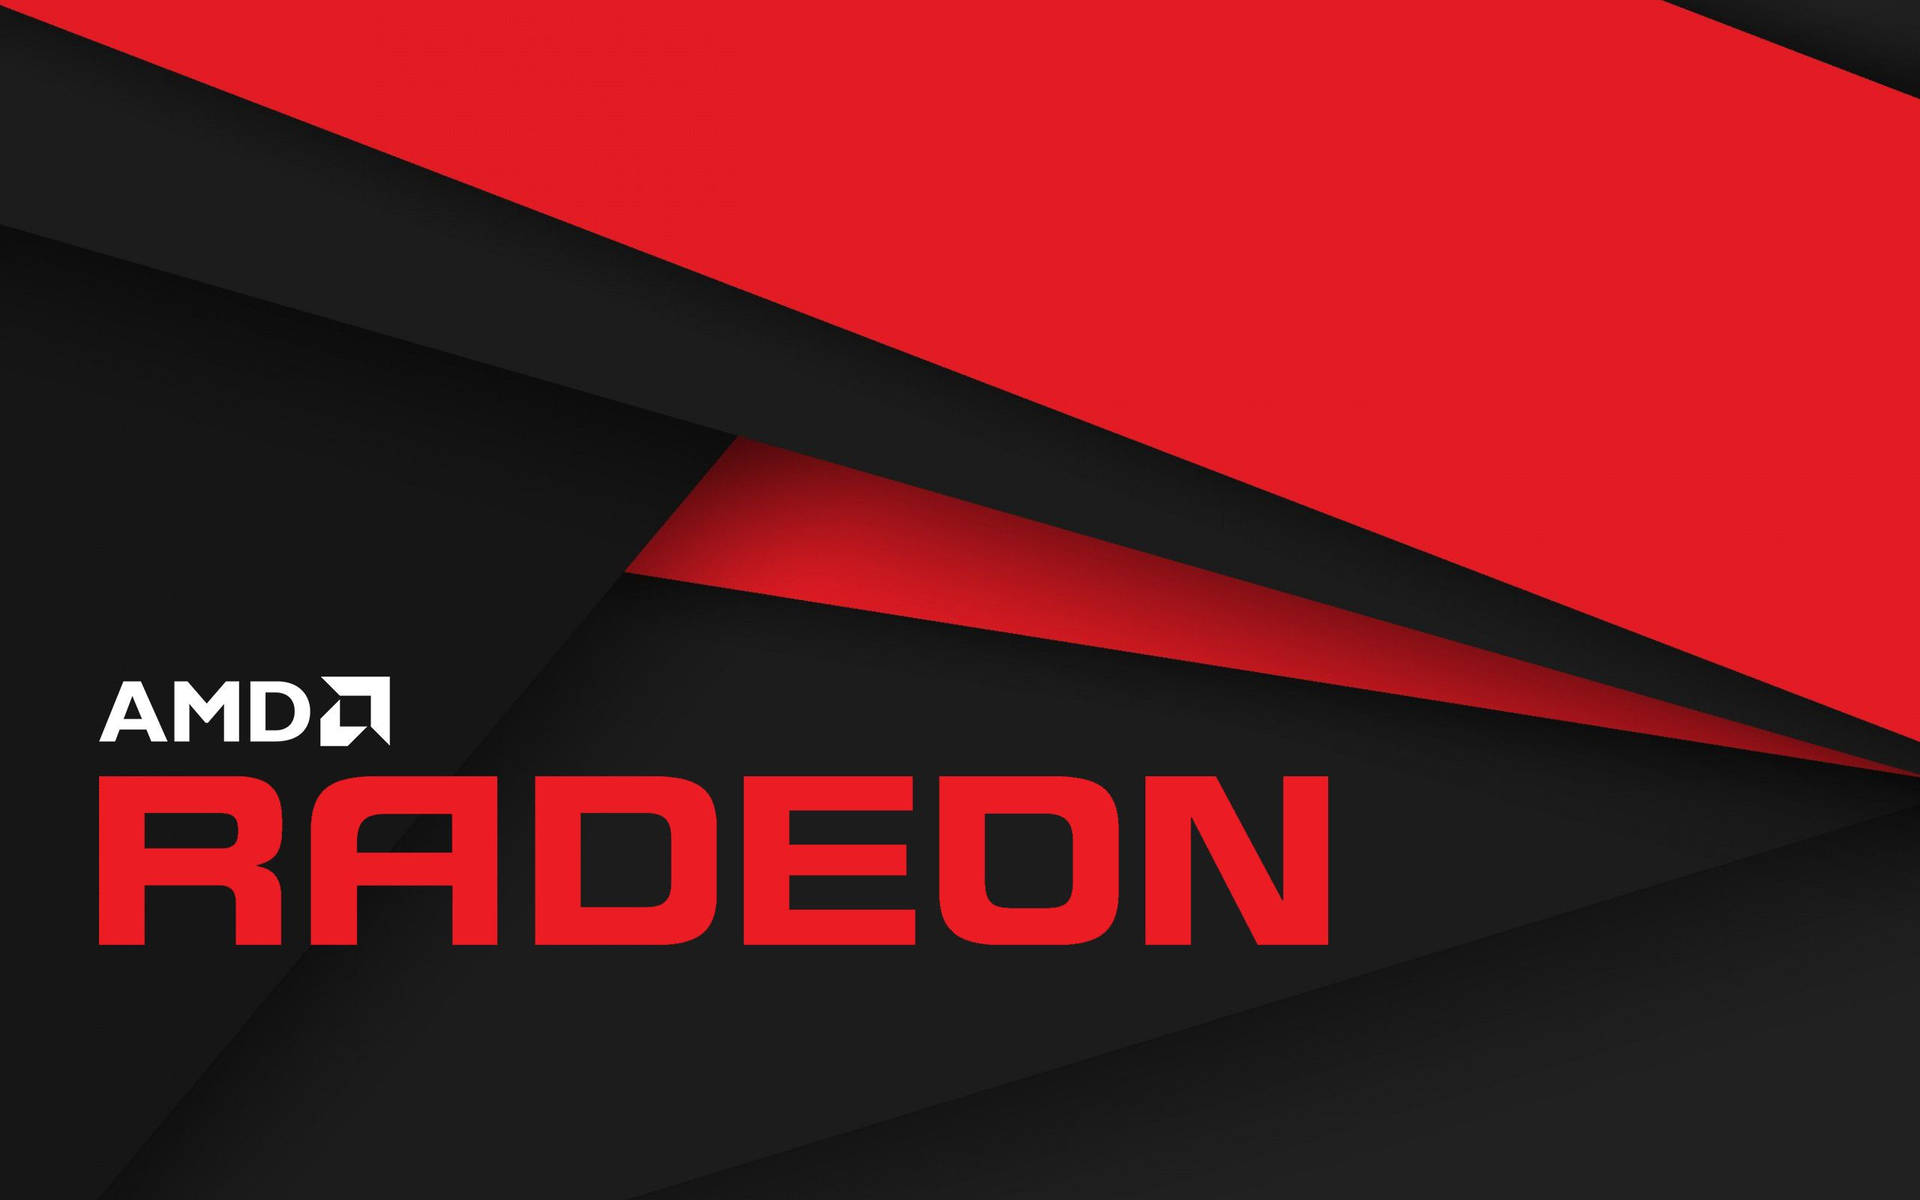 Amd Radeon Logo Wallpaper